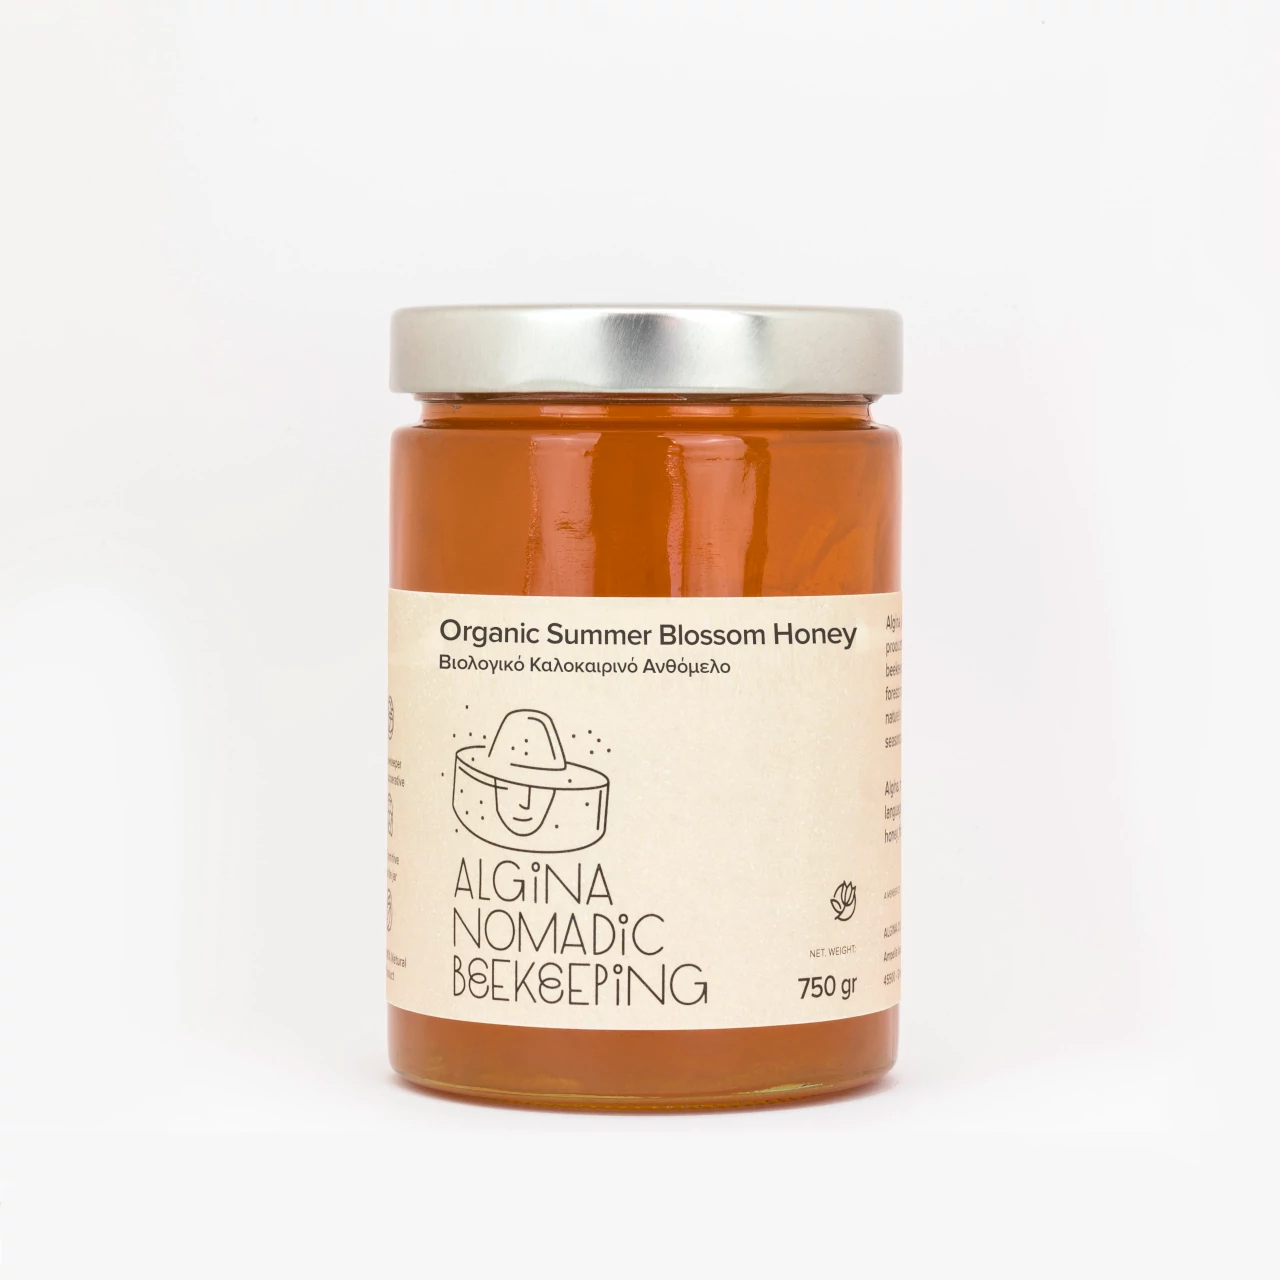 Organic summer blossom honey jar